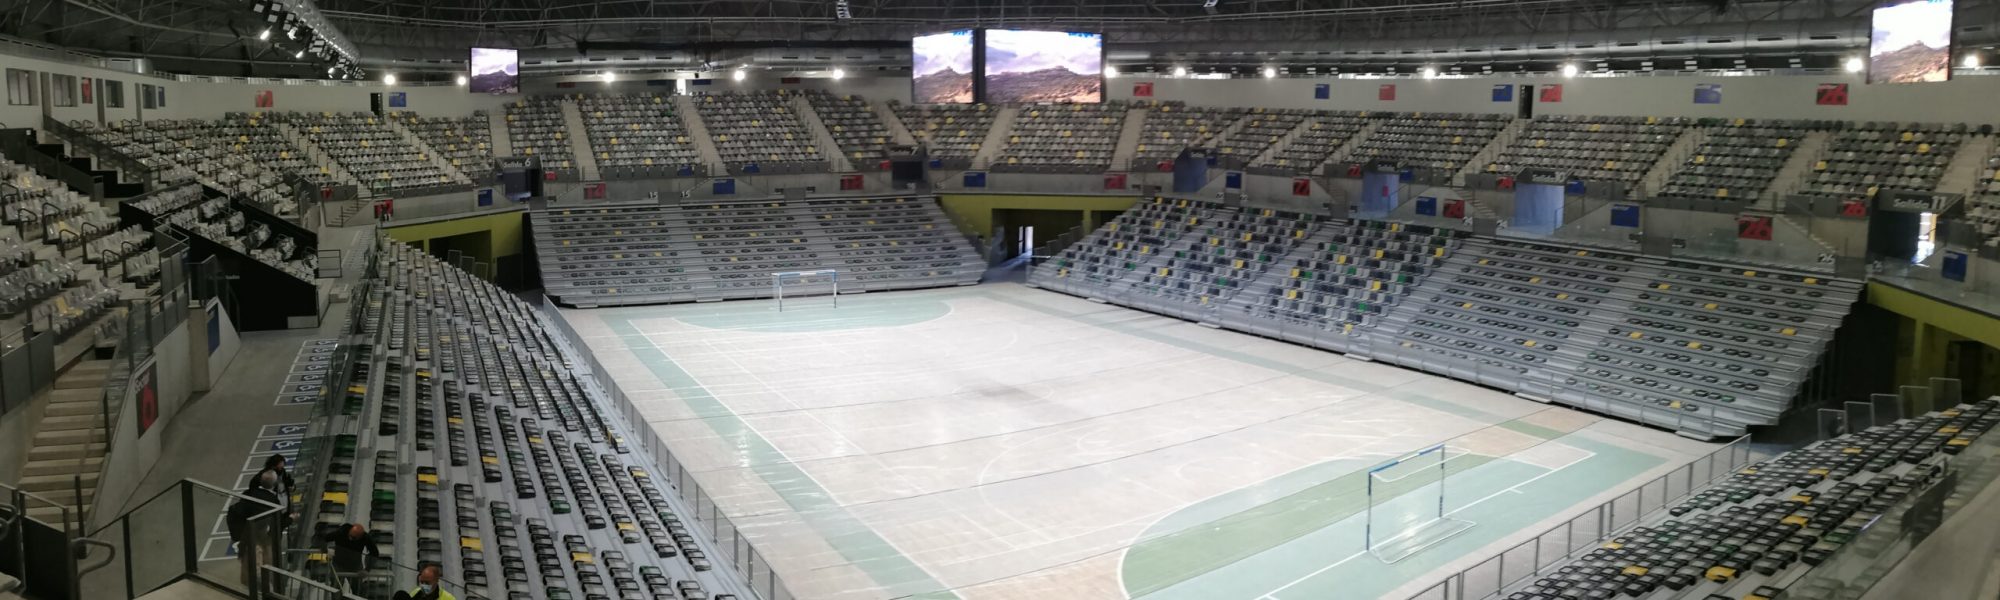 El Olivo Arena de Jaén, equipado con gradas telescópicas, Mondo Smart Systems, cubo led, pantallas led, cortinas divisorias y equipamiento deportivo de Mondo